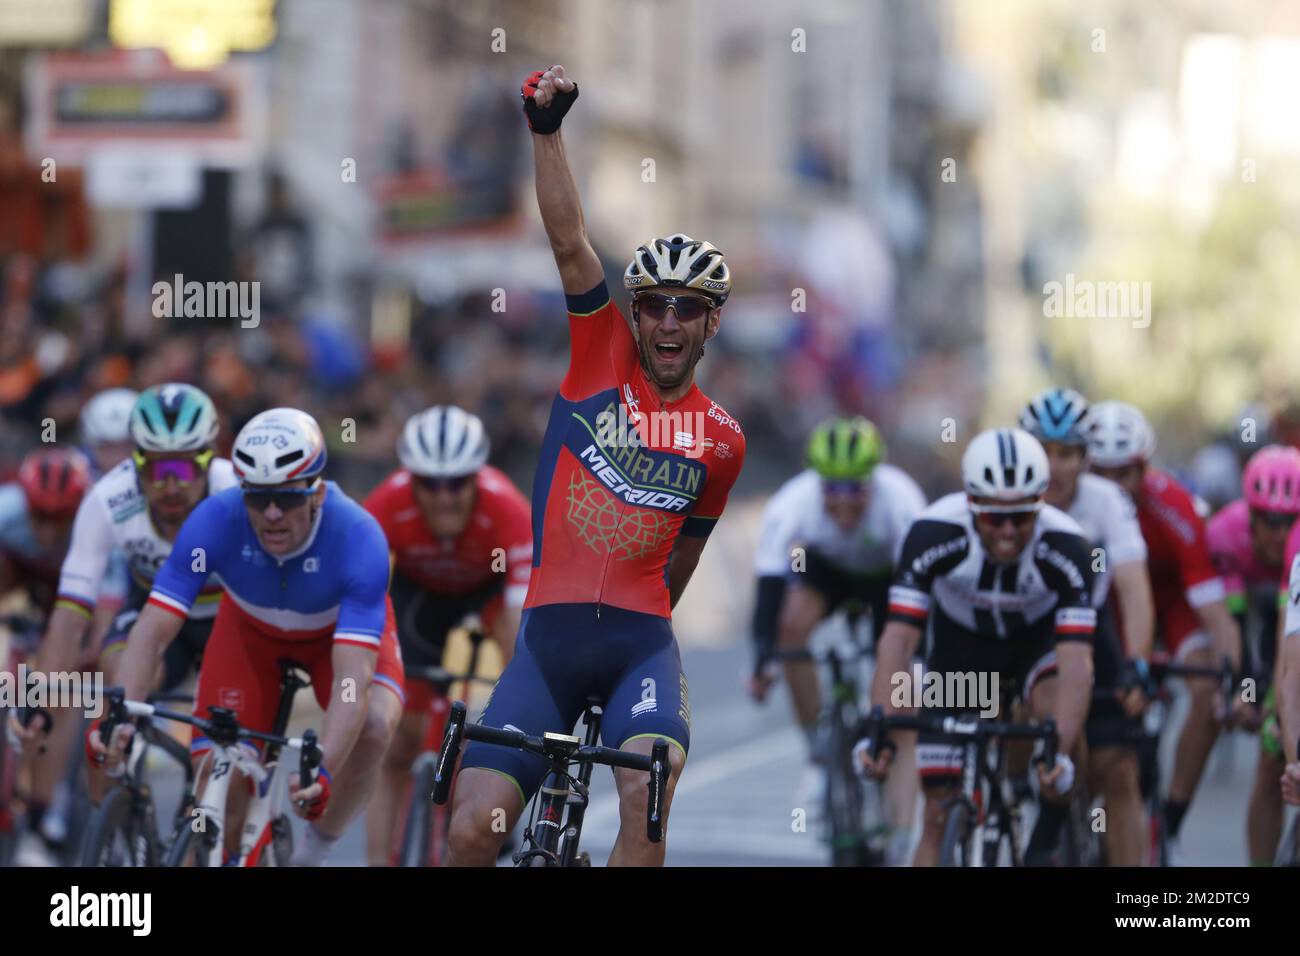 Der italienische Vincenzo Nibali von Bahrain-Merida feiert nach dem Gewinn der 109.. Ausgabe des eintägigen Radrennen „Milano-Sanremo“, 291 km von Mailand nach Sanremo, Italien, Samstag, 17. März 2018. BELGA FOTO YUZURU SUNADA Stockfoto